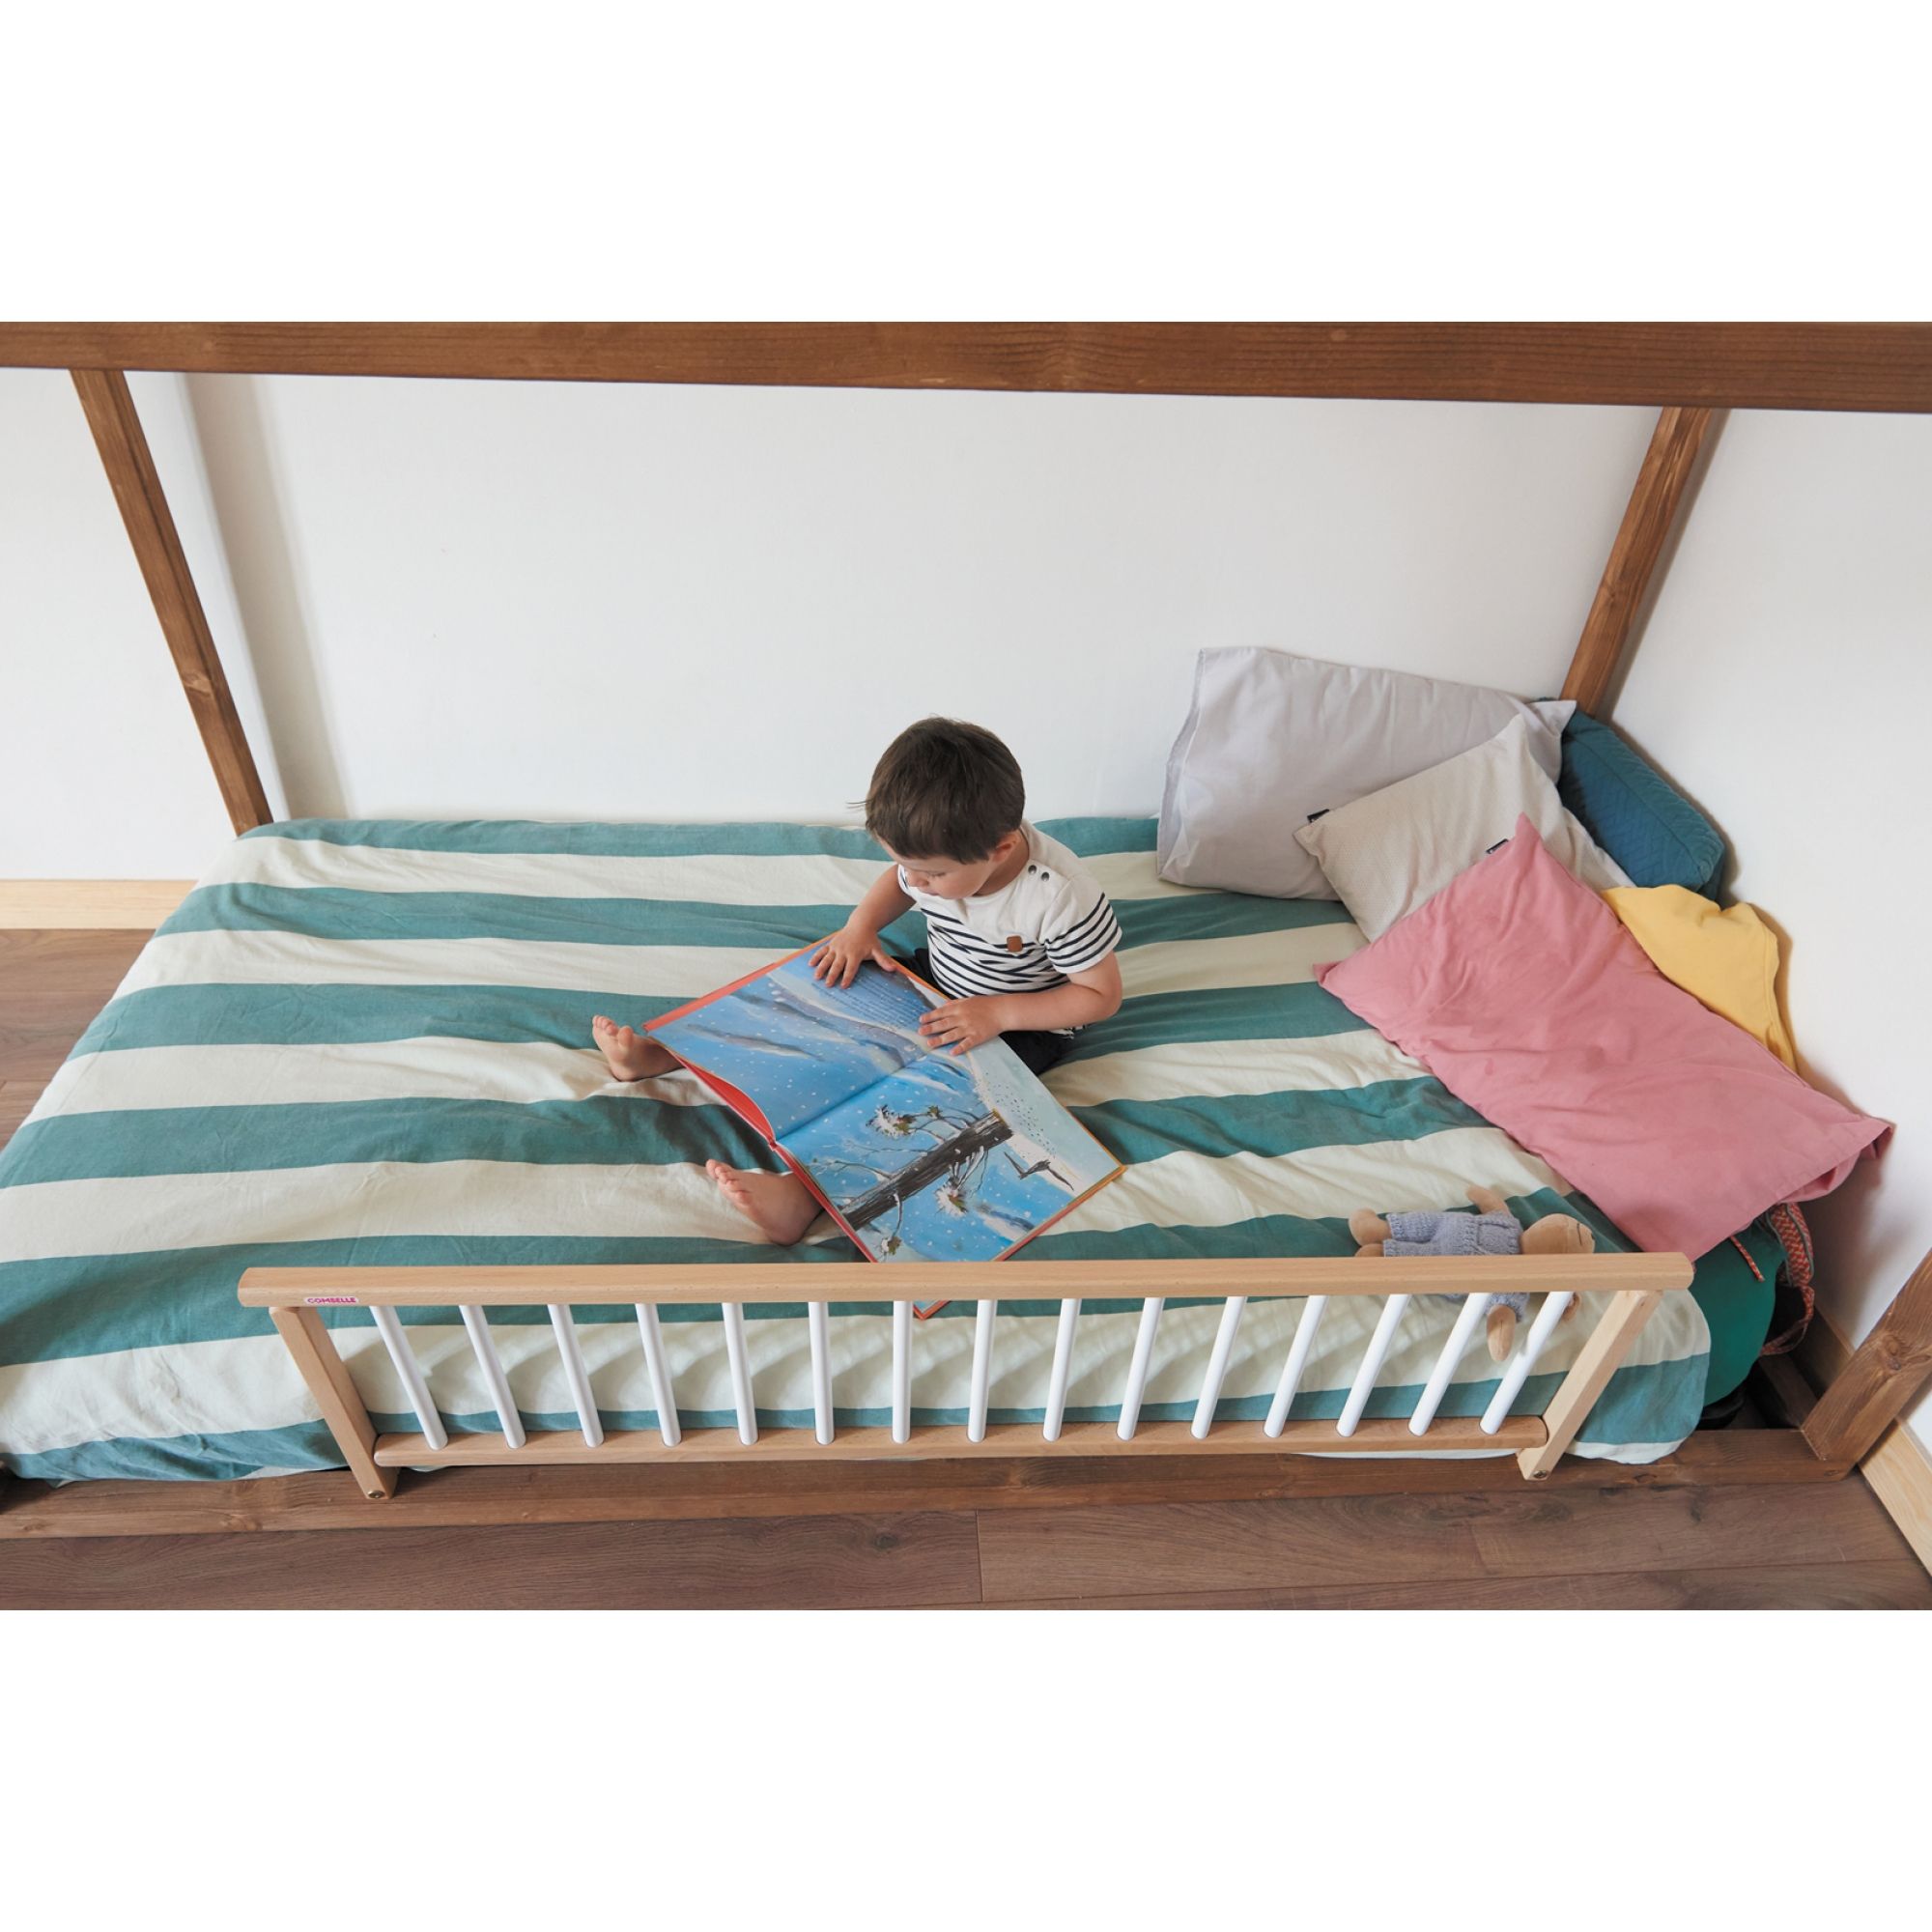 Barrière de lit pour enfant, de diamètre 18mm en finition naturel